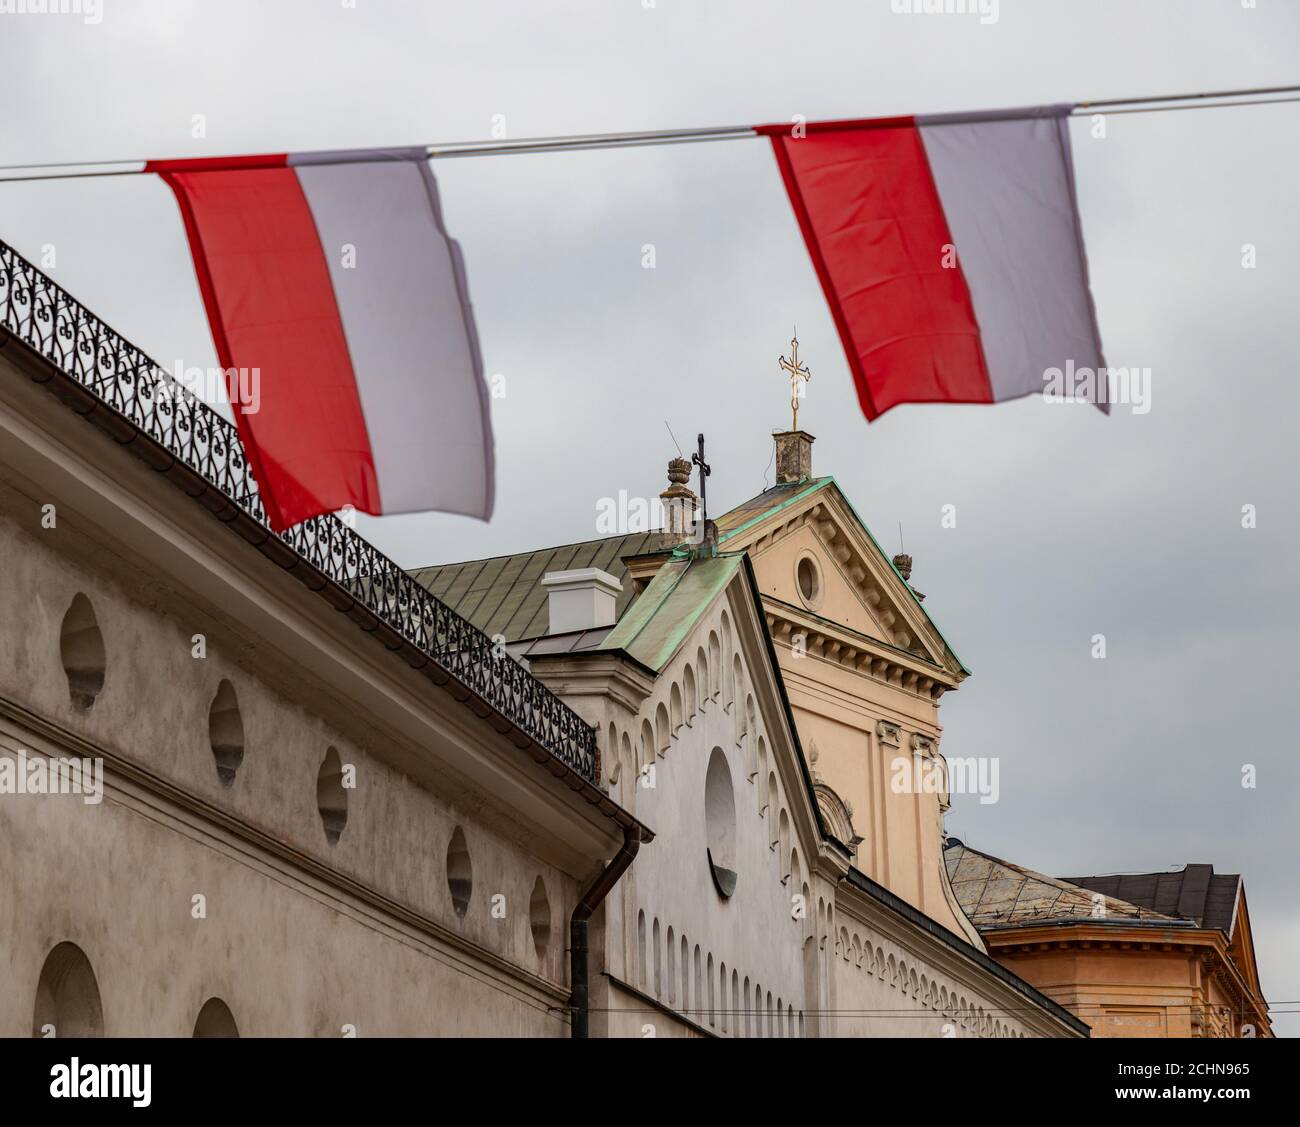 Una foto di due bandiere polacche che sventolano in una strada (Cracovia). Foto Stock